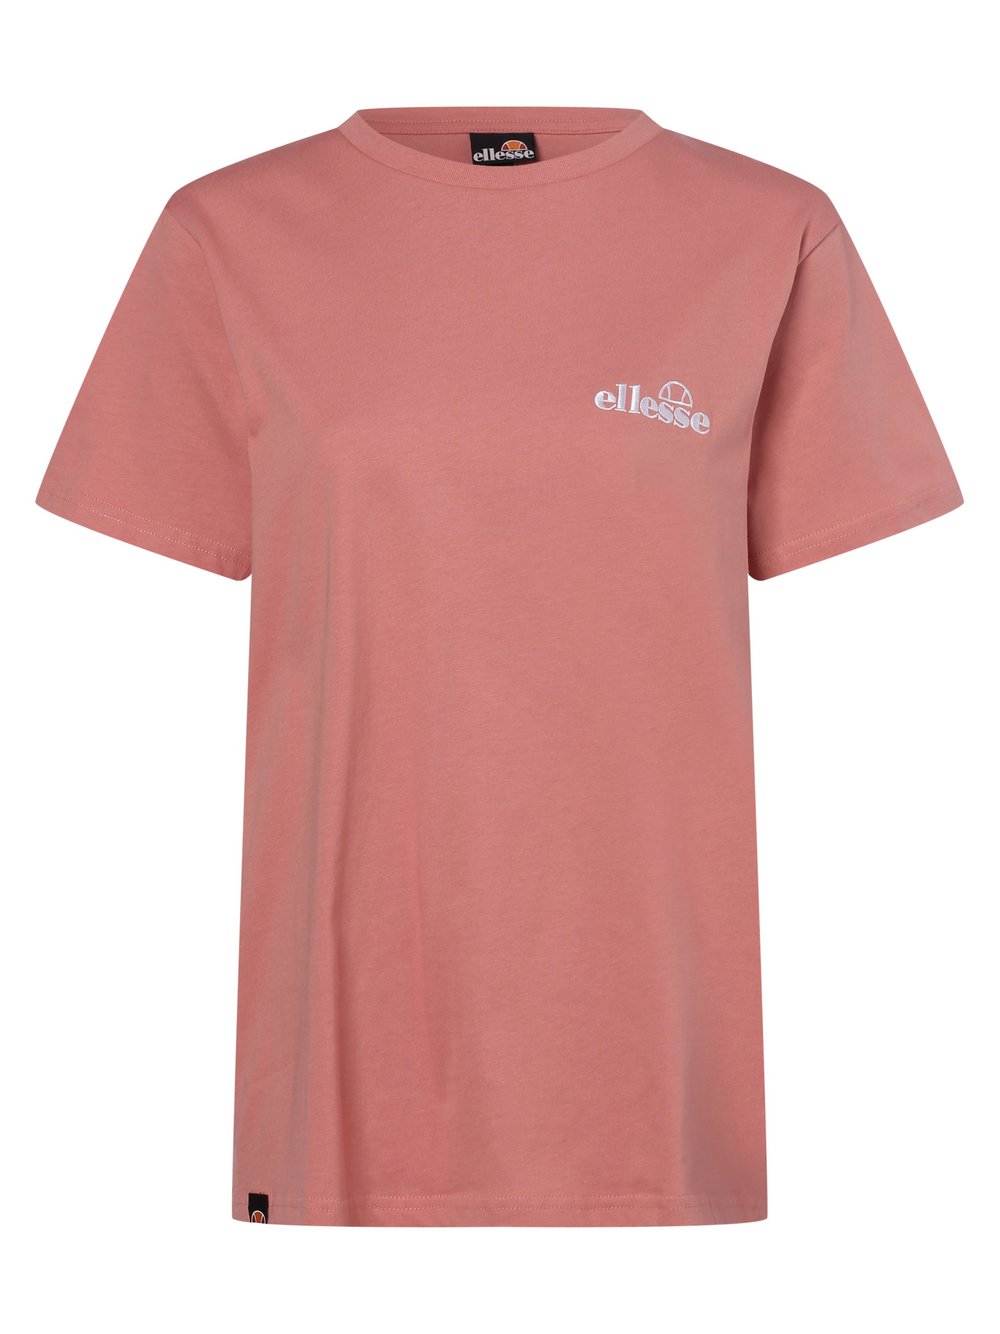 ellesse - T-shirt damski – Labda, różowy